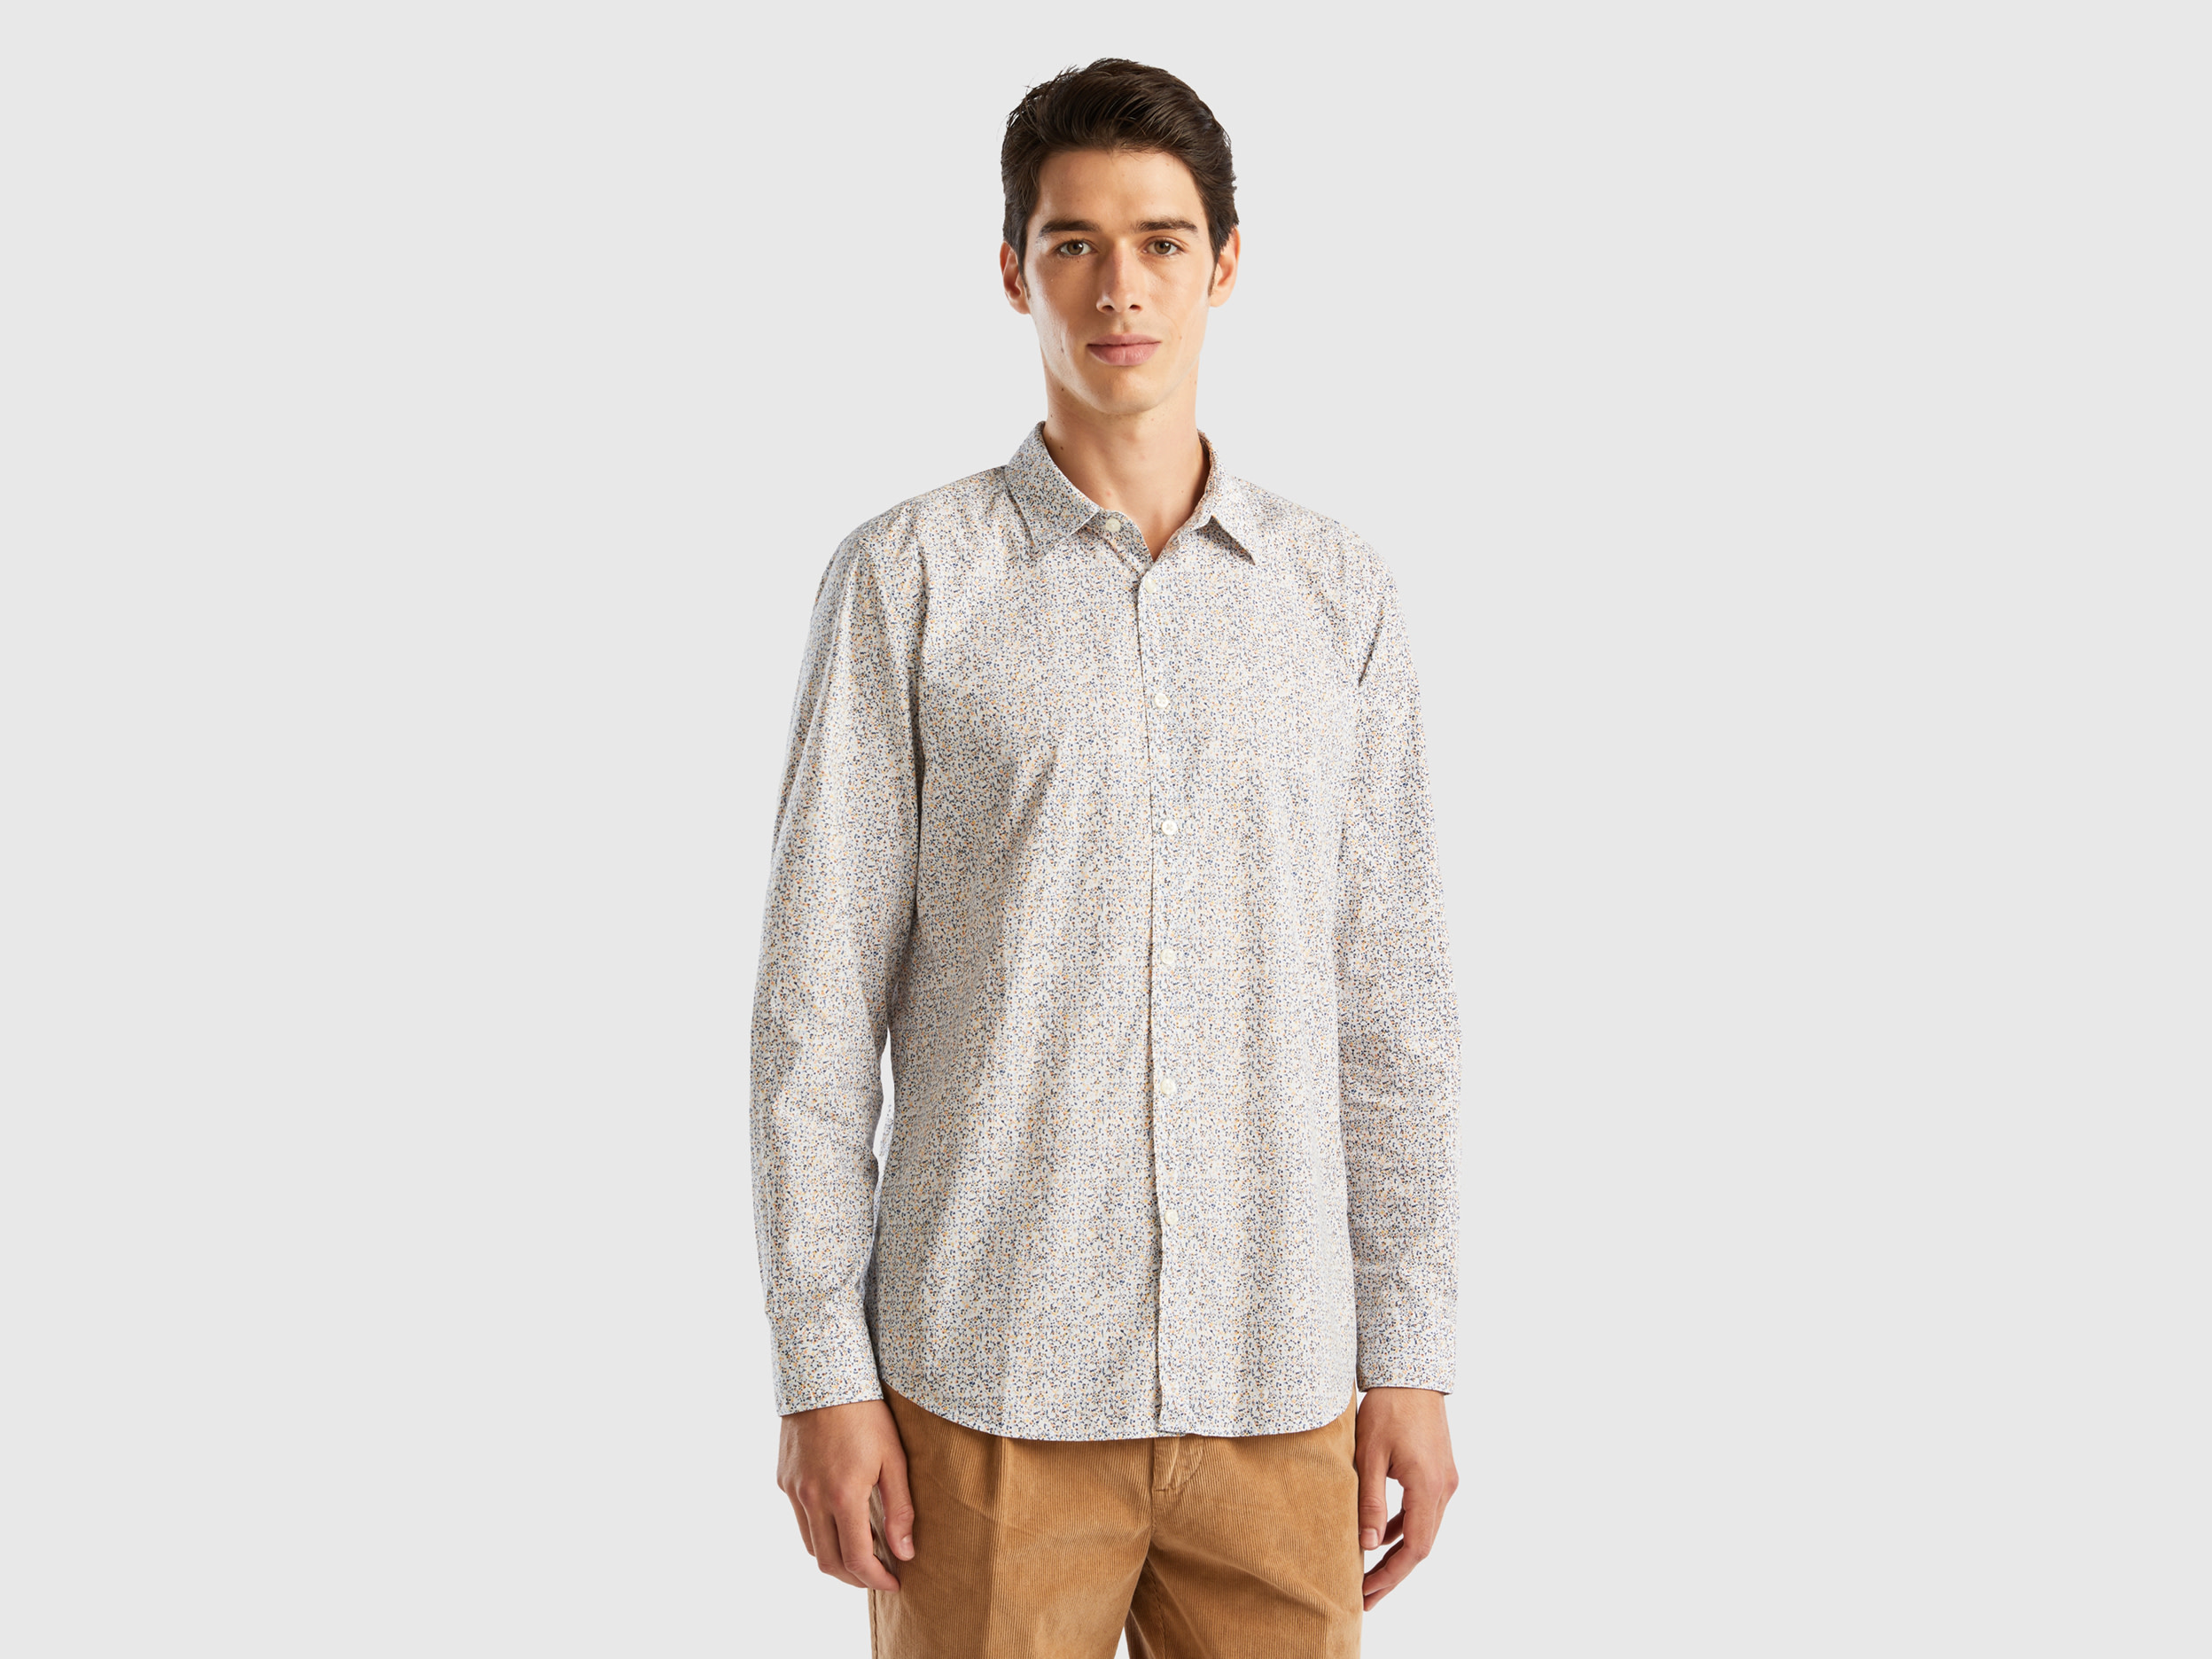 Benetton, Patterned Slim Fit Shirt, size XS, Multi-color, Men